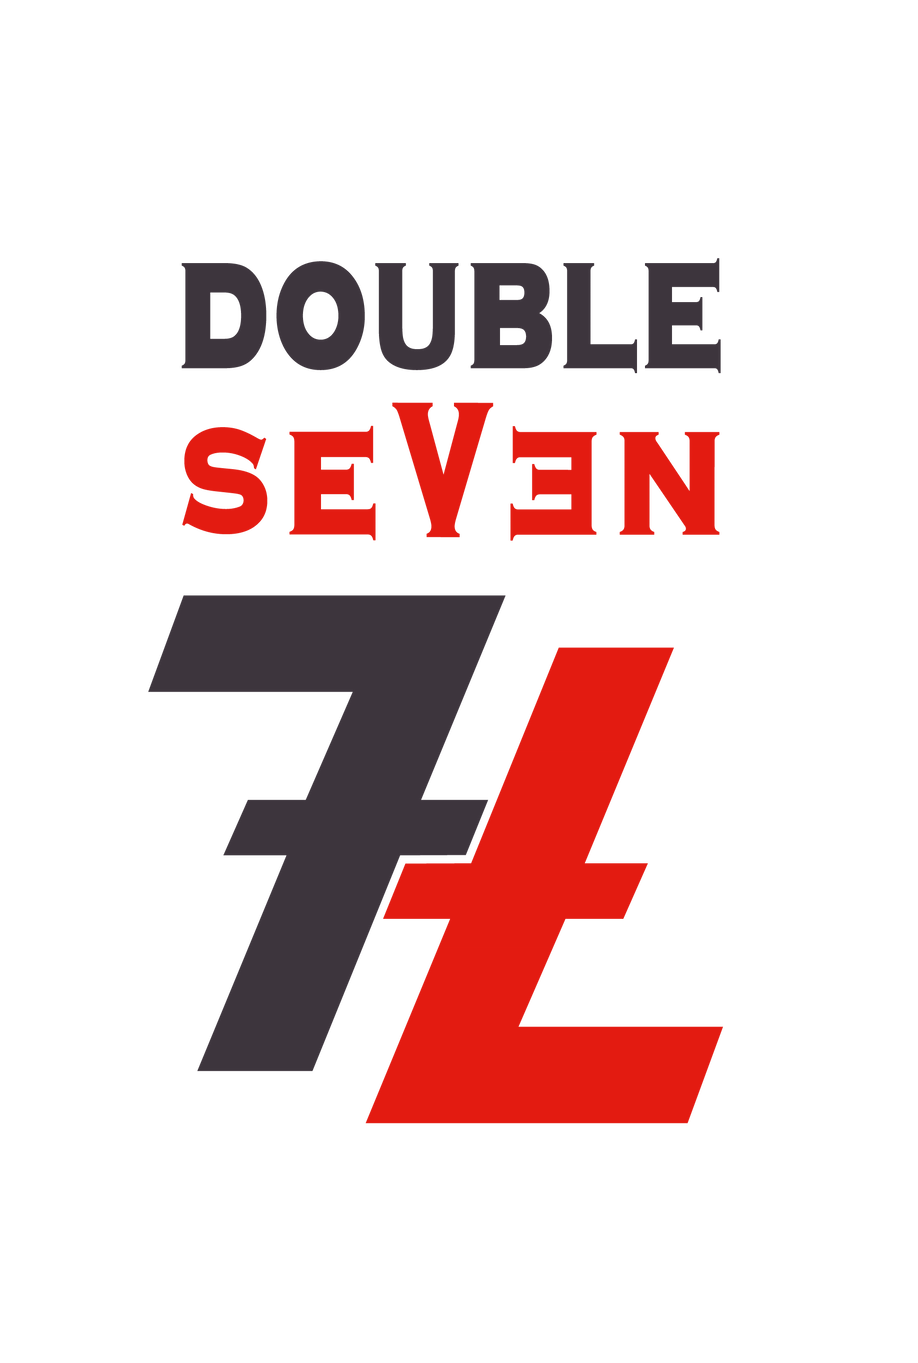 Double Seven